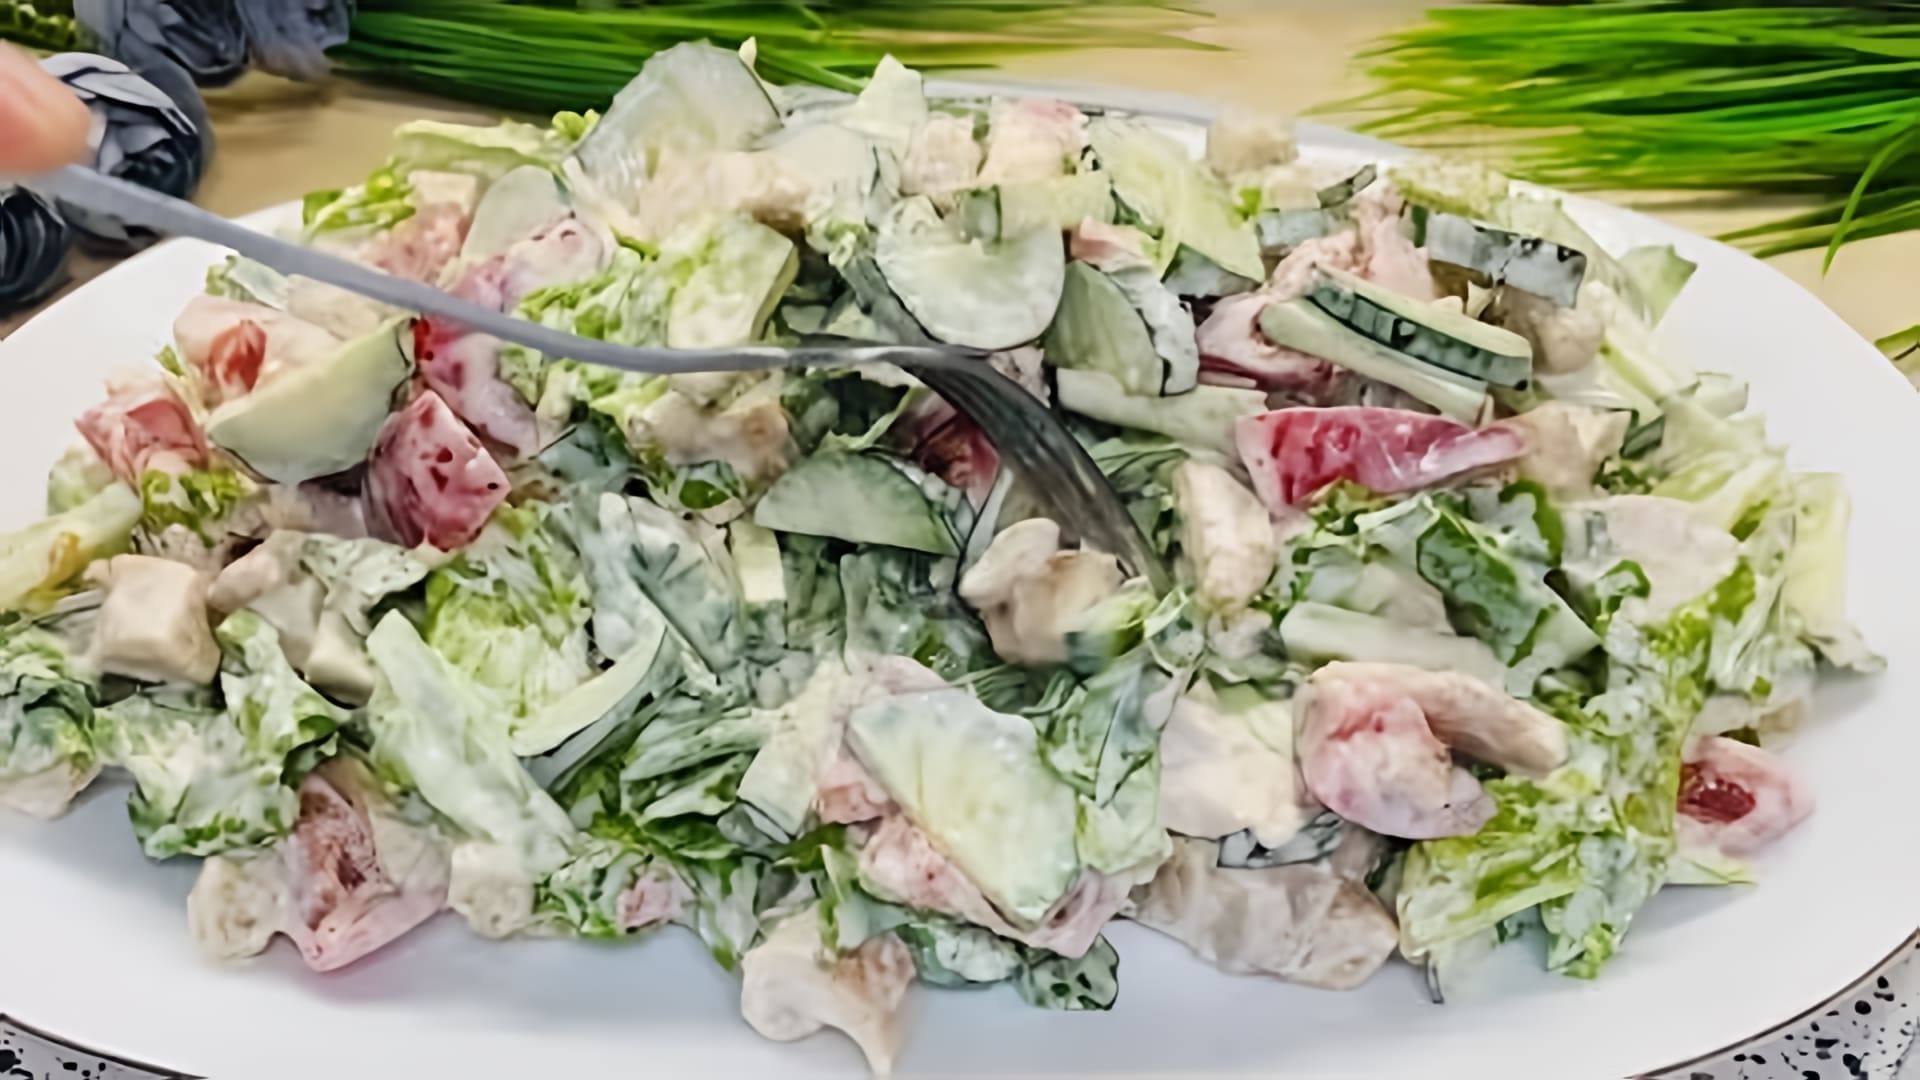 Вкусный рецепт салата Цезарь - это видео-ролик, который демонстрирует процесс приготовления популярного салата